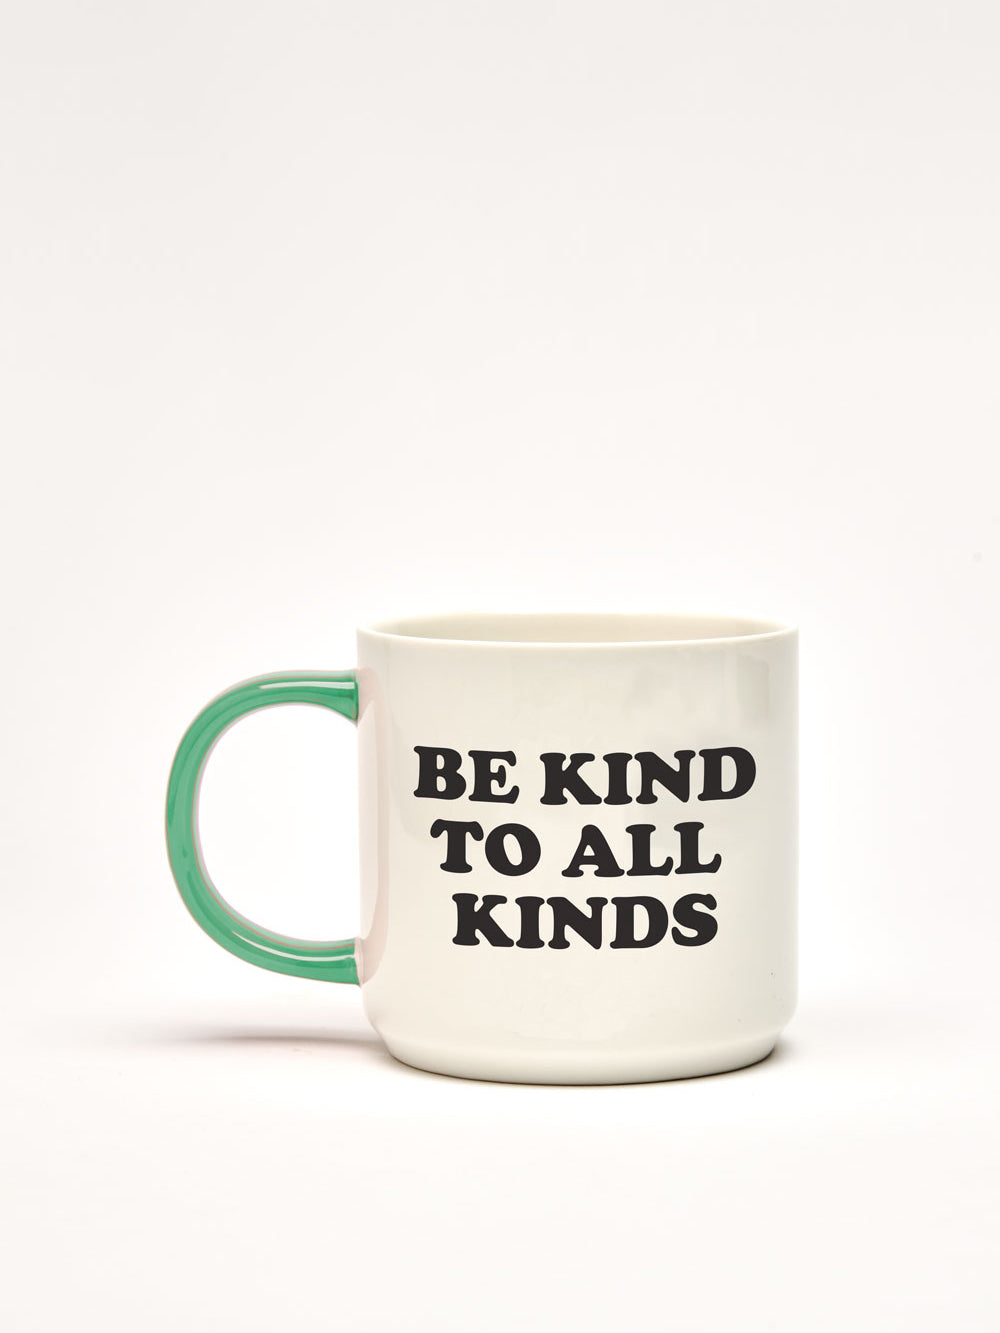 Peanuts Mug, Be Kind To All Kinds